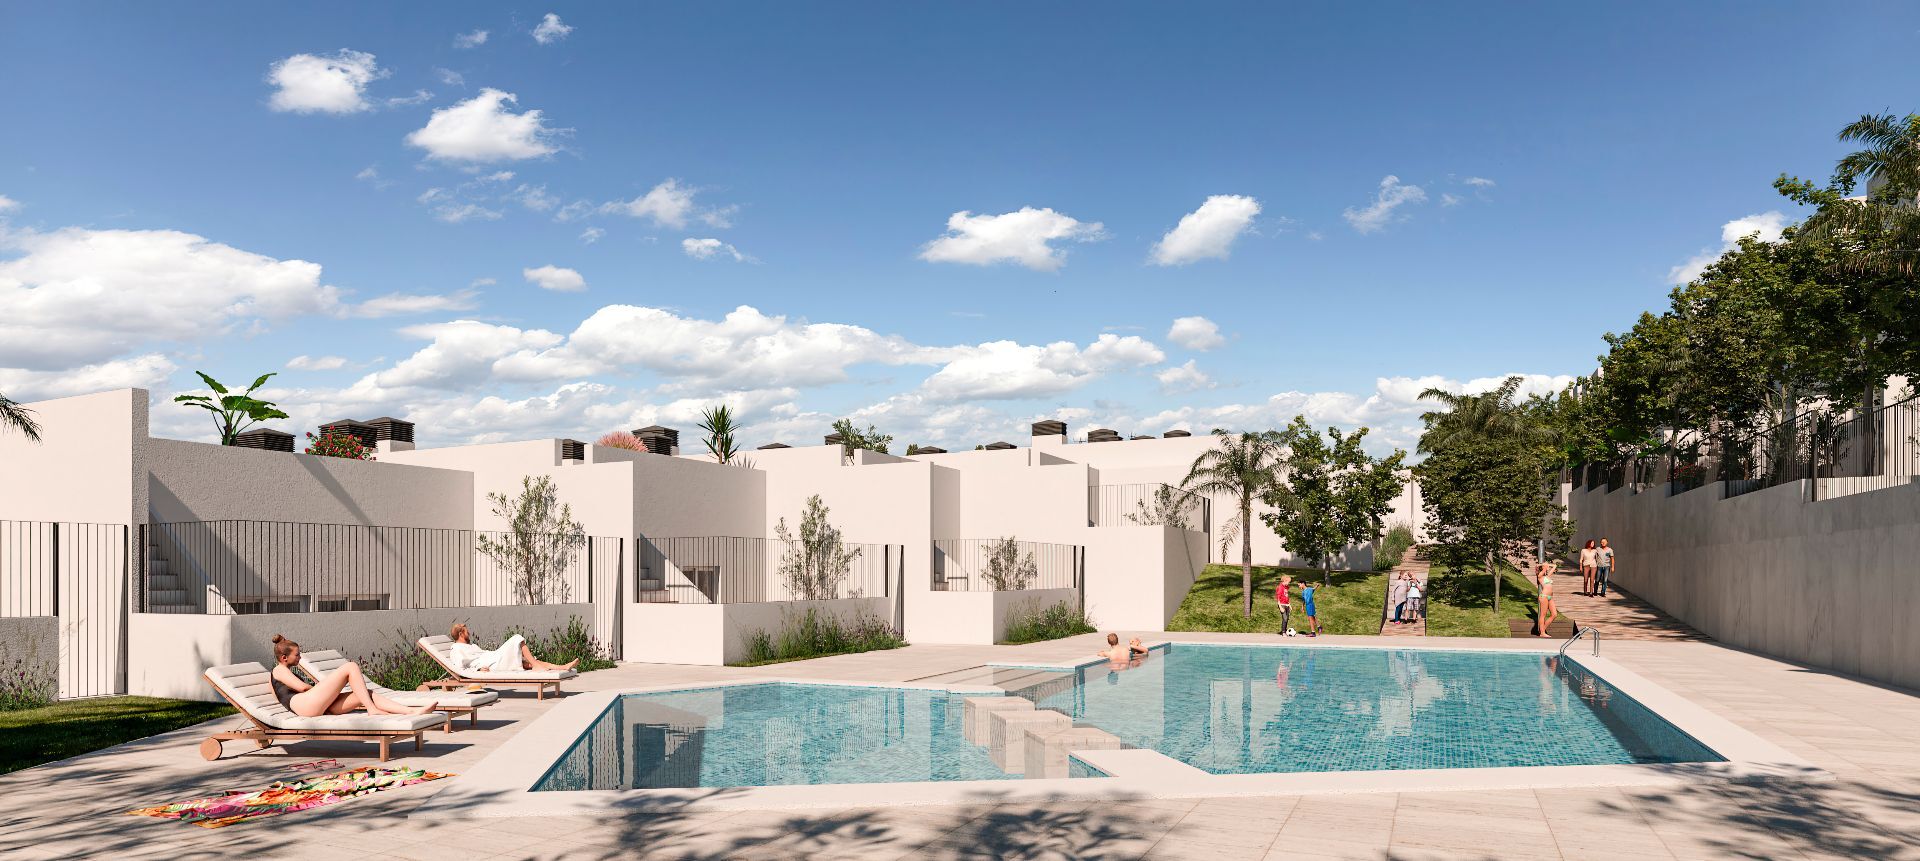 Vrijstaande villa's met gezamenlijk zwembad. Garage mogelijk